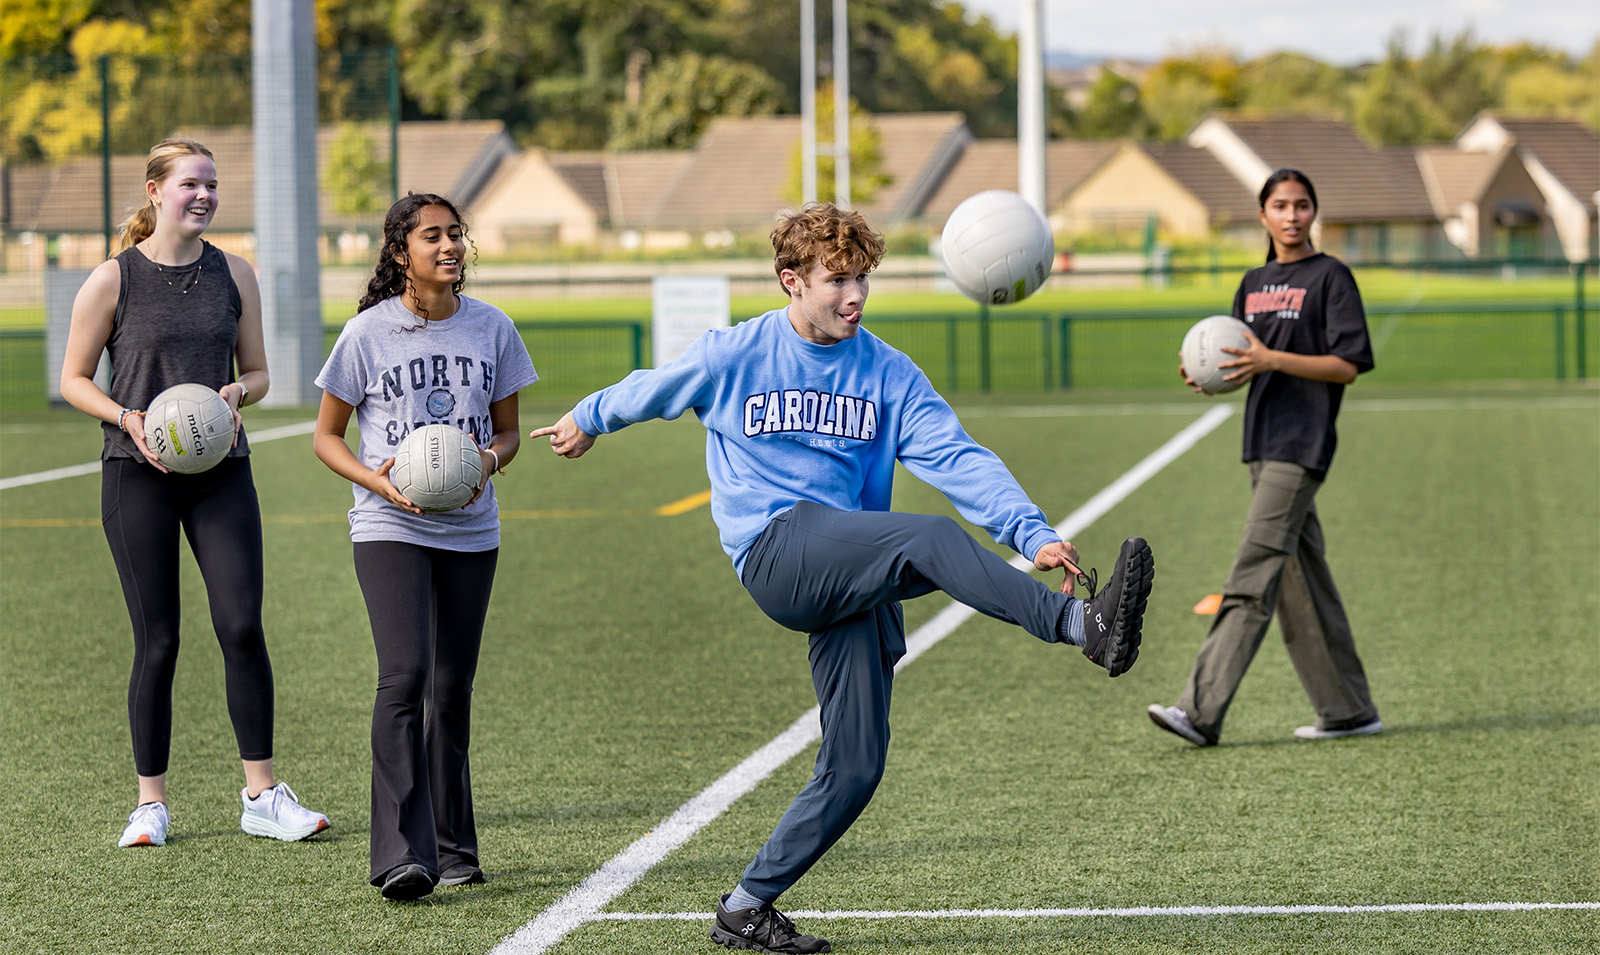 A student kicking a ball.